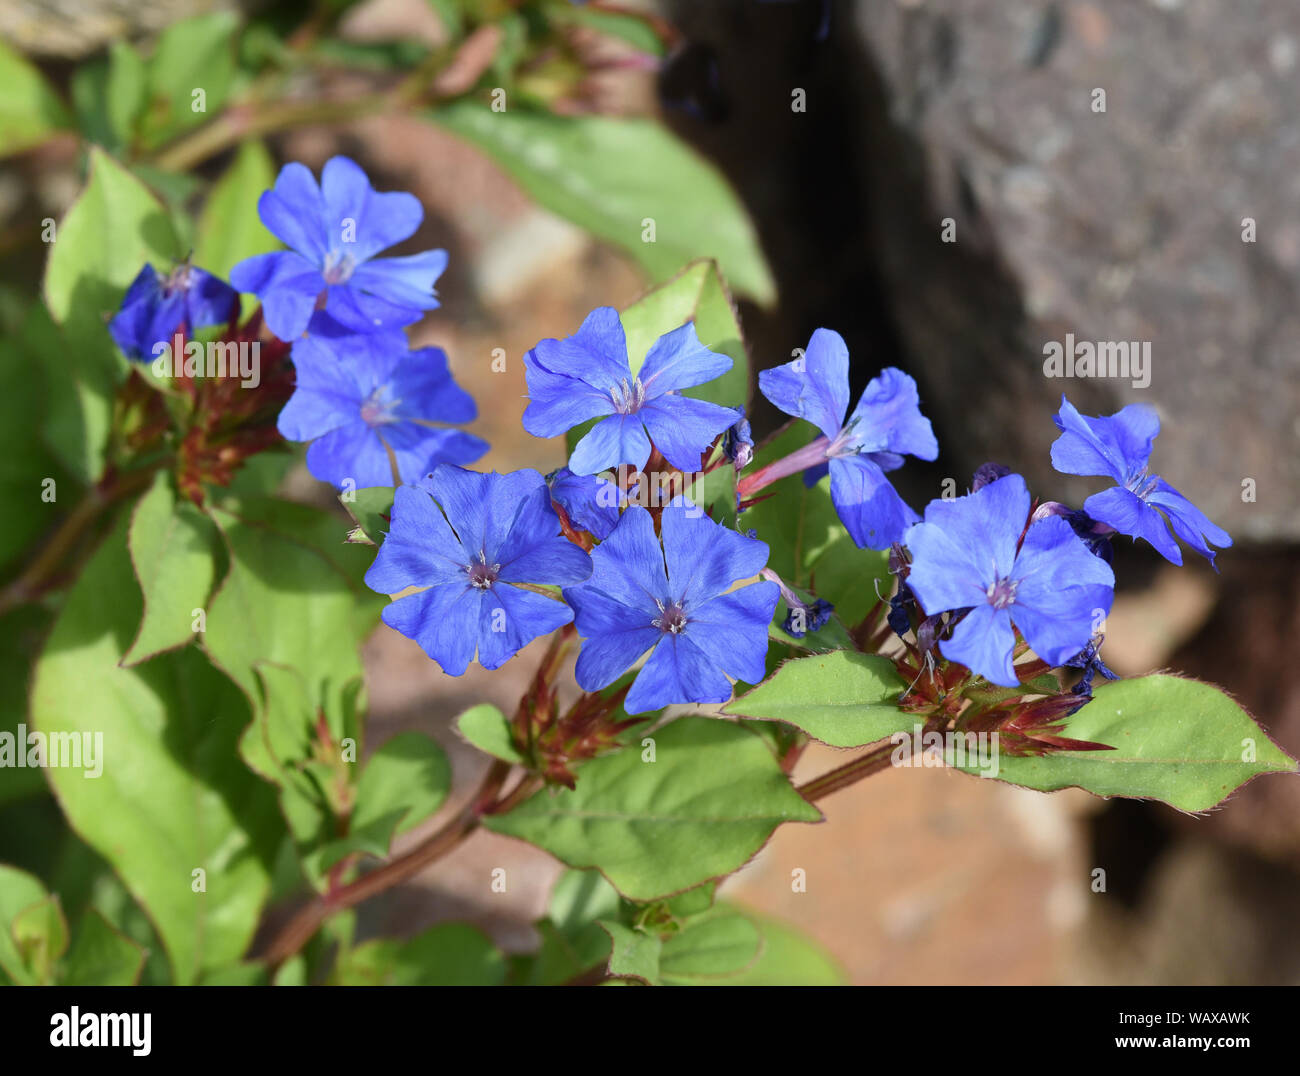 Bleiwurz Wiimottiana, Cerastostigma, ist eine wichtige Heilpflanze und eine Blume mit blauen Blueten. Wiimottiana Leadwort, Cerastostigma, est un important Banque D'Images